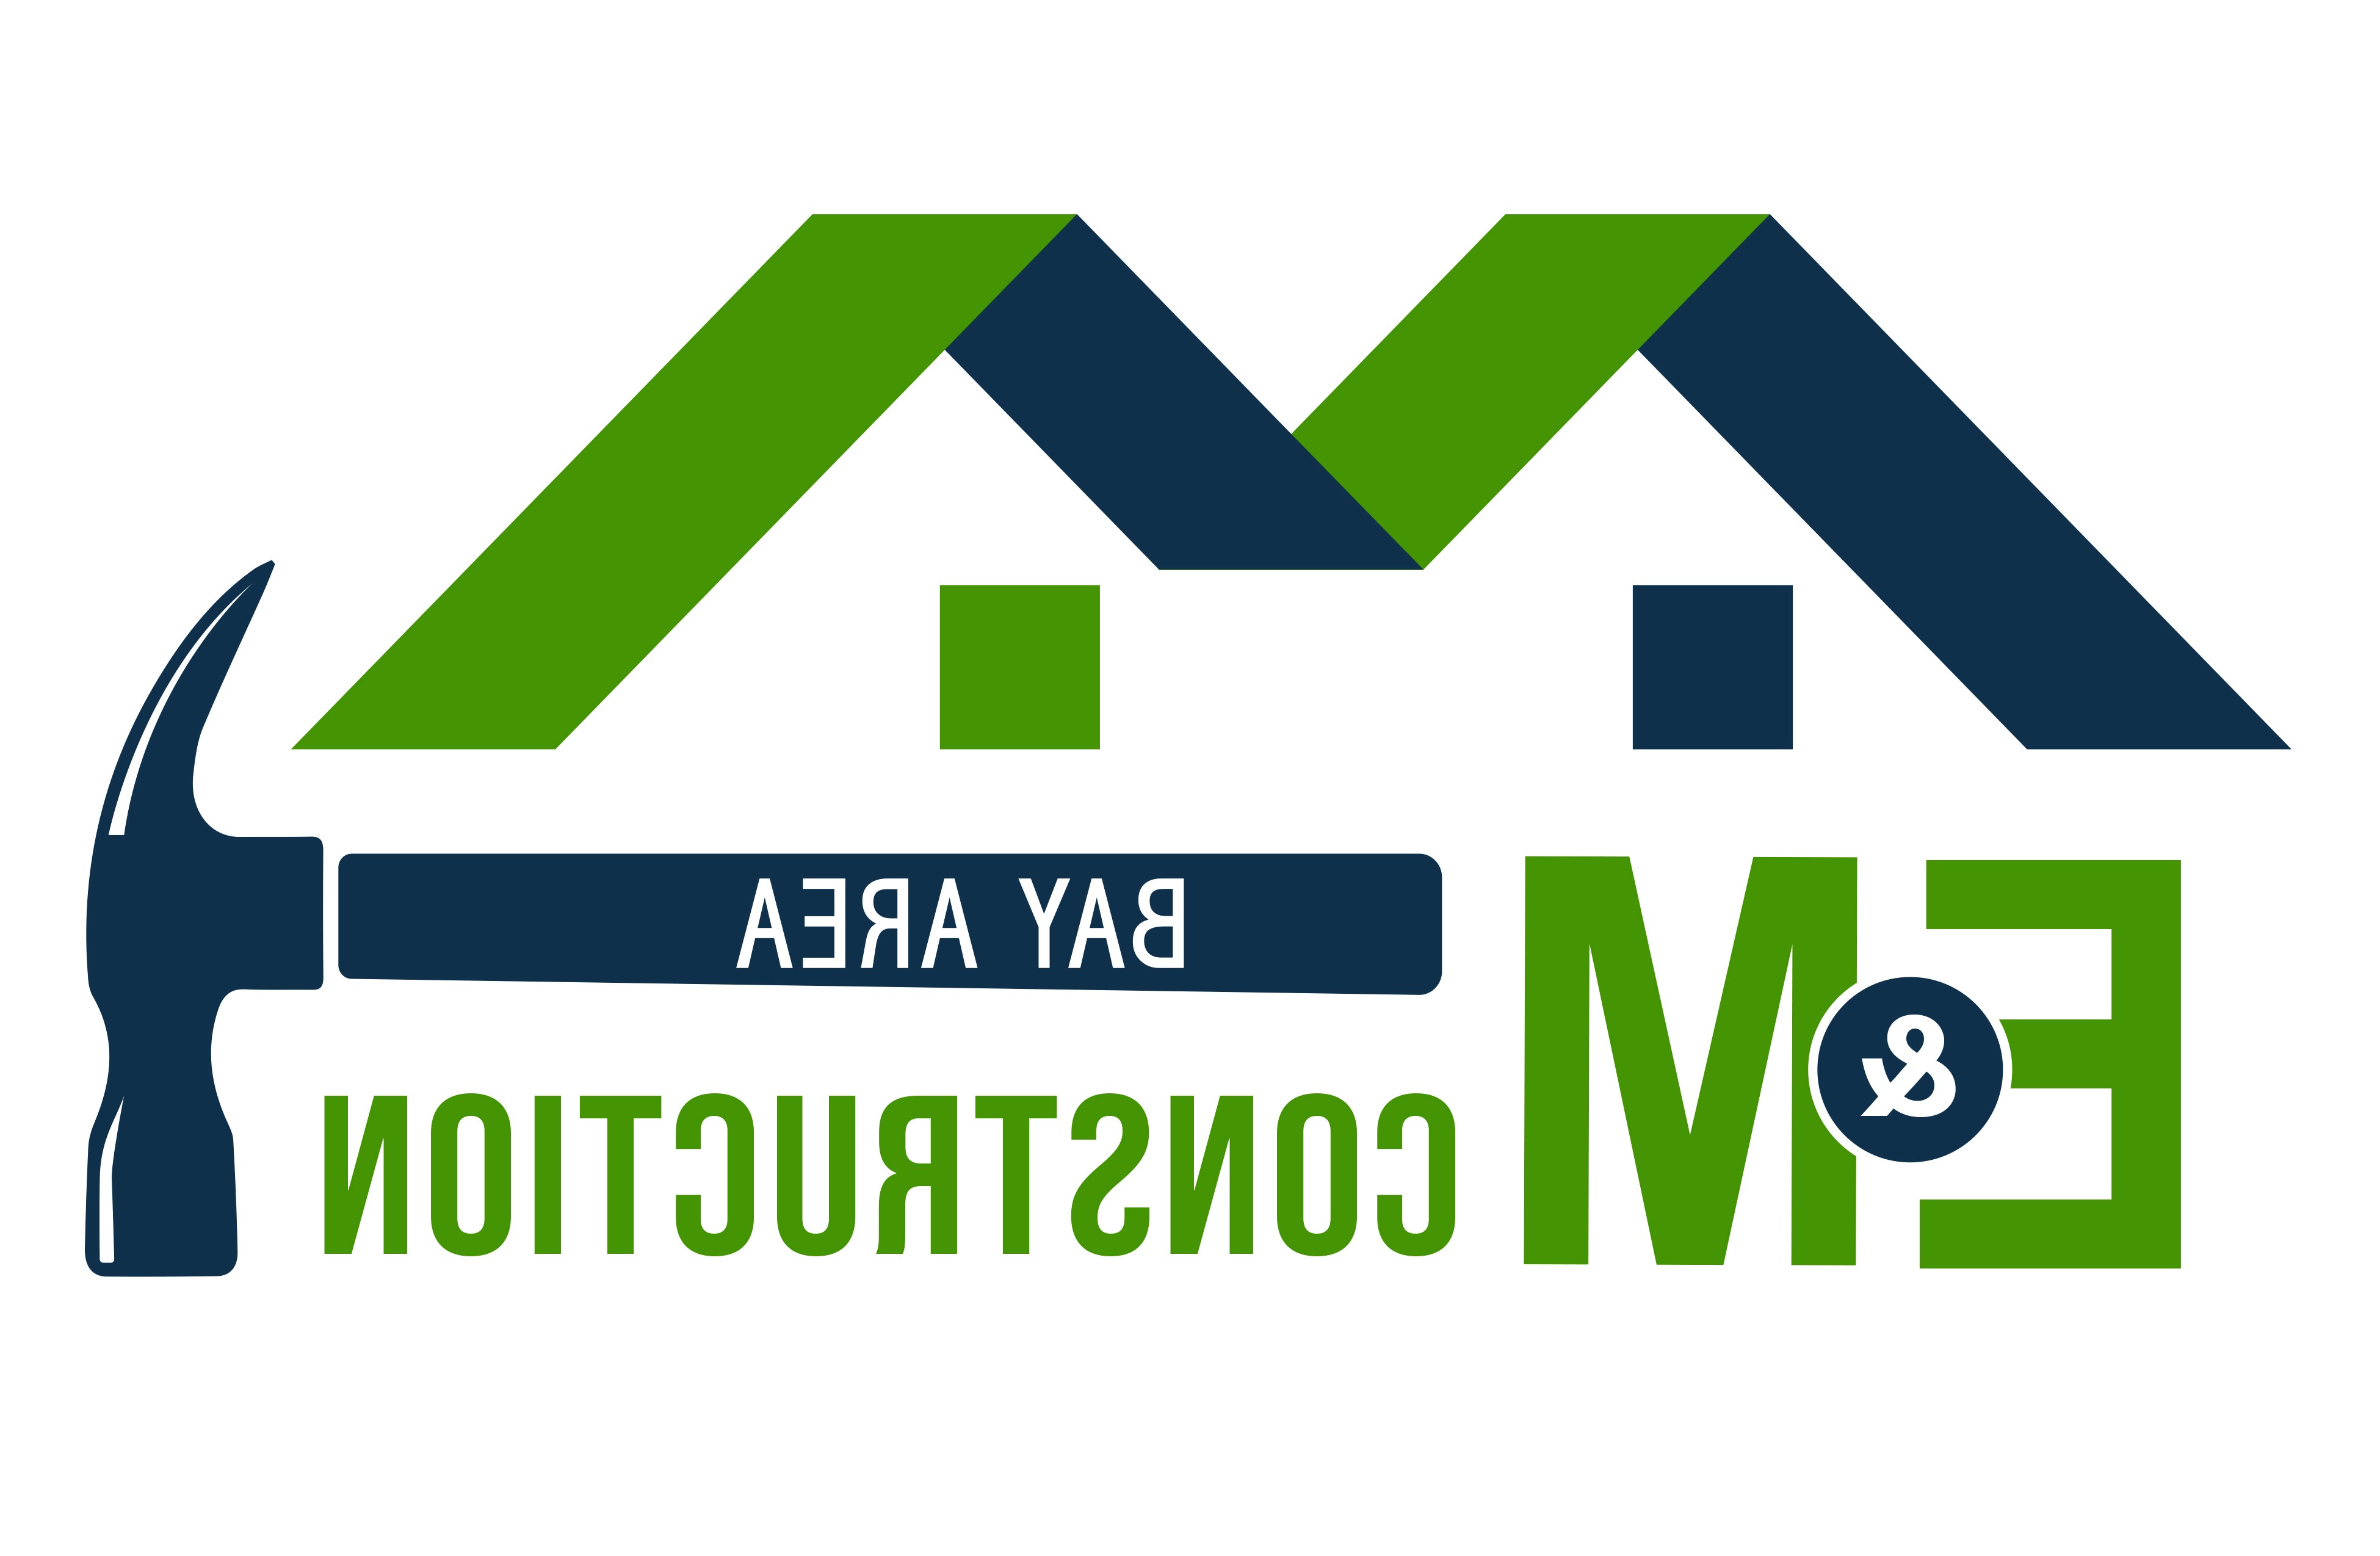 E M Pro Construction Logo